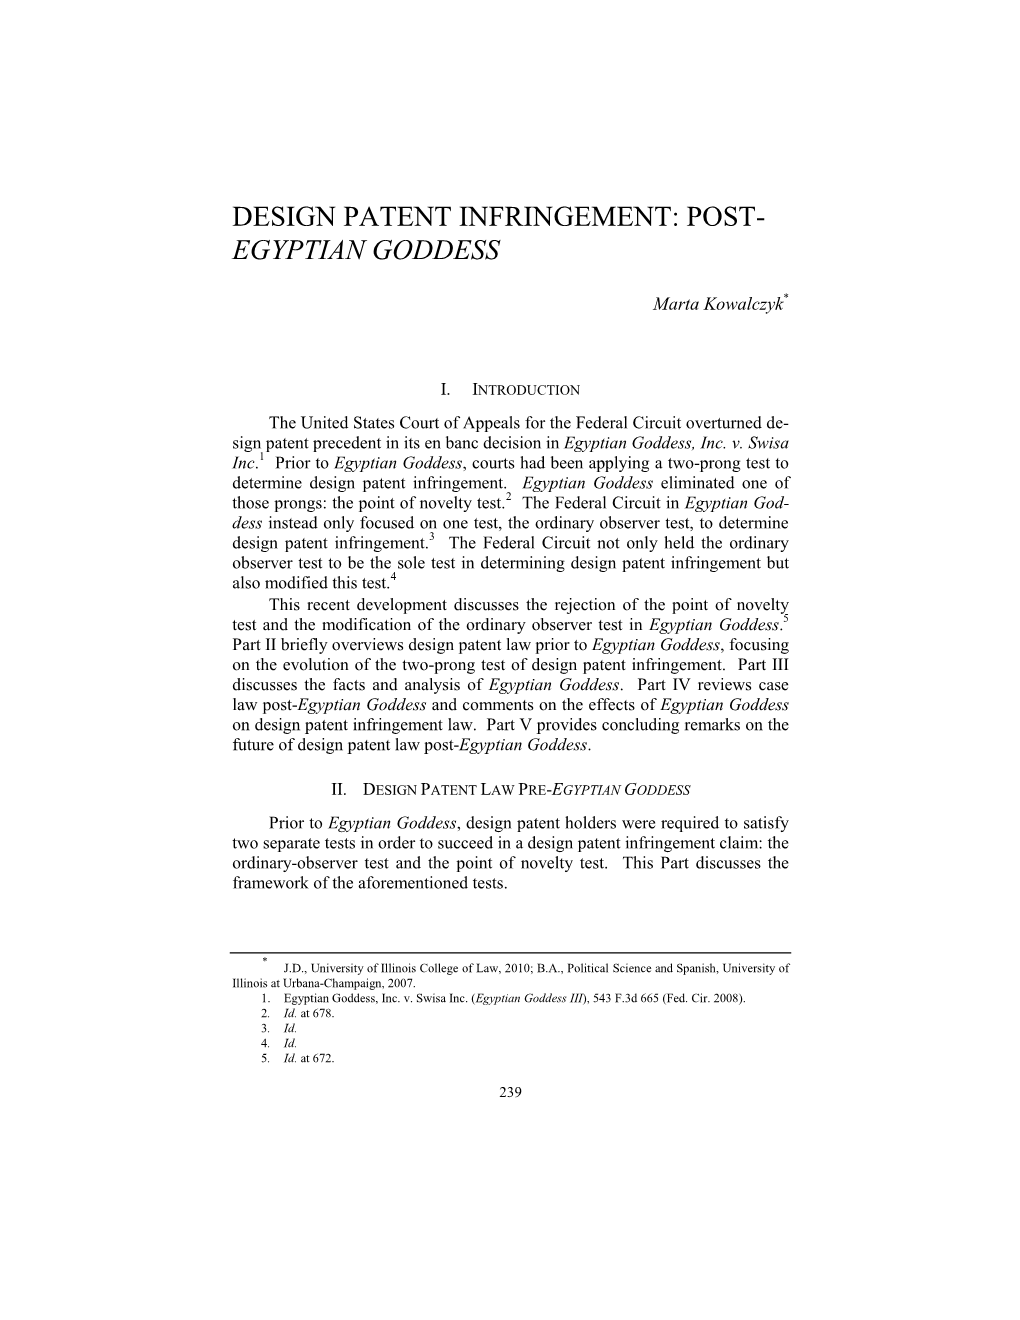 Design Patent Infringement: Post- Egyptian Goddess